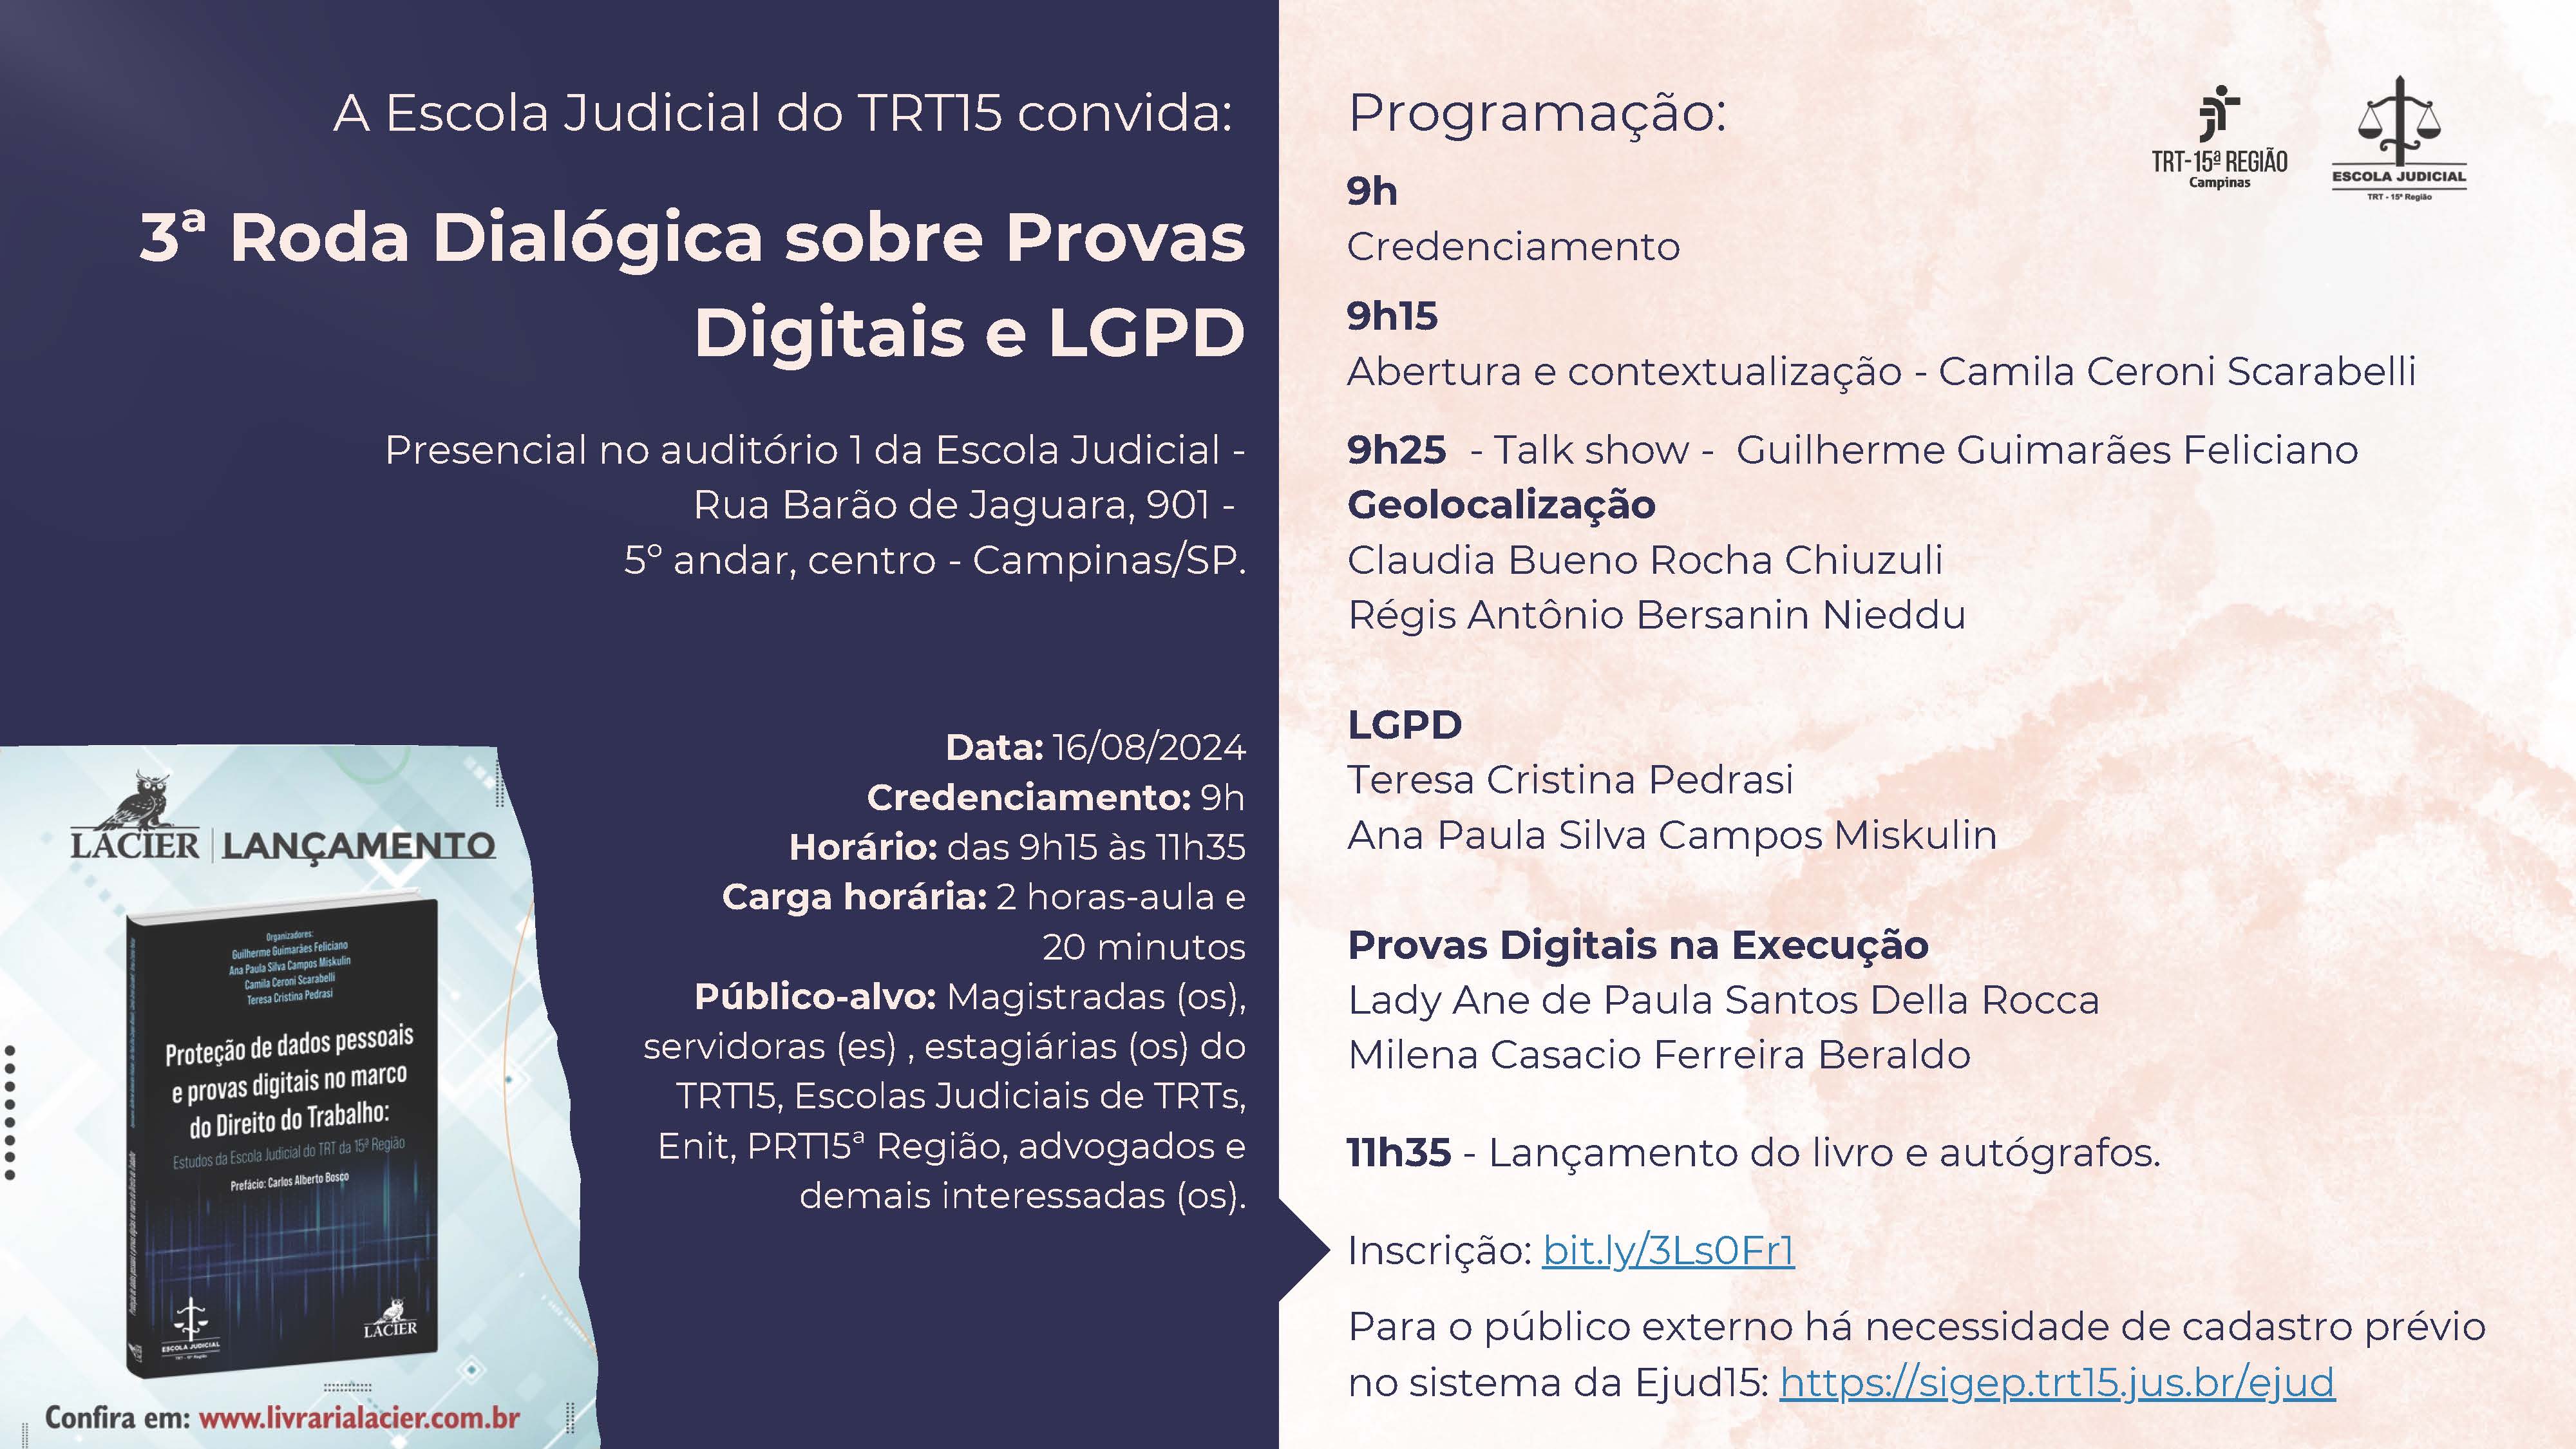 3ª Roda Dialógica sobre Provas Digitais e LGPD - 16 de agosto de 2024 das 9h às 11h35